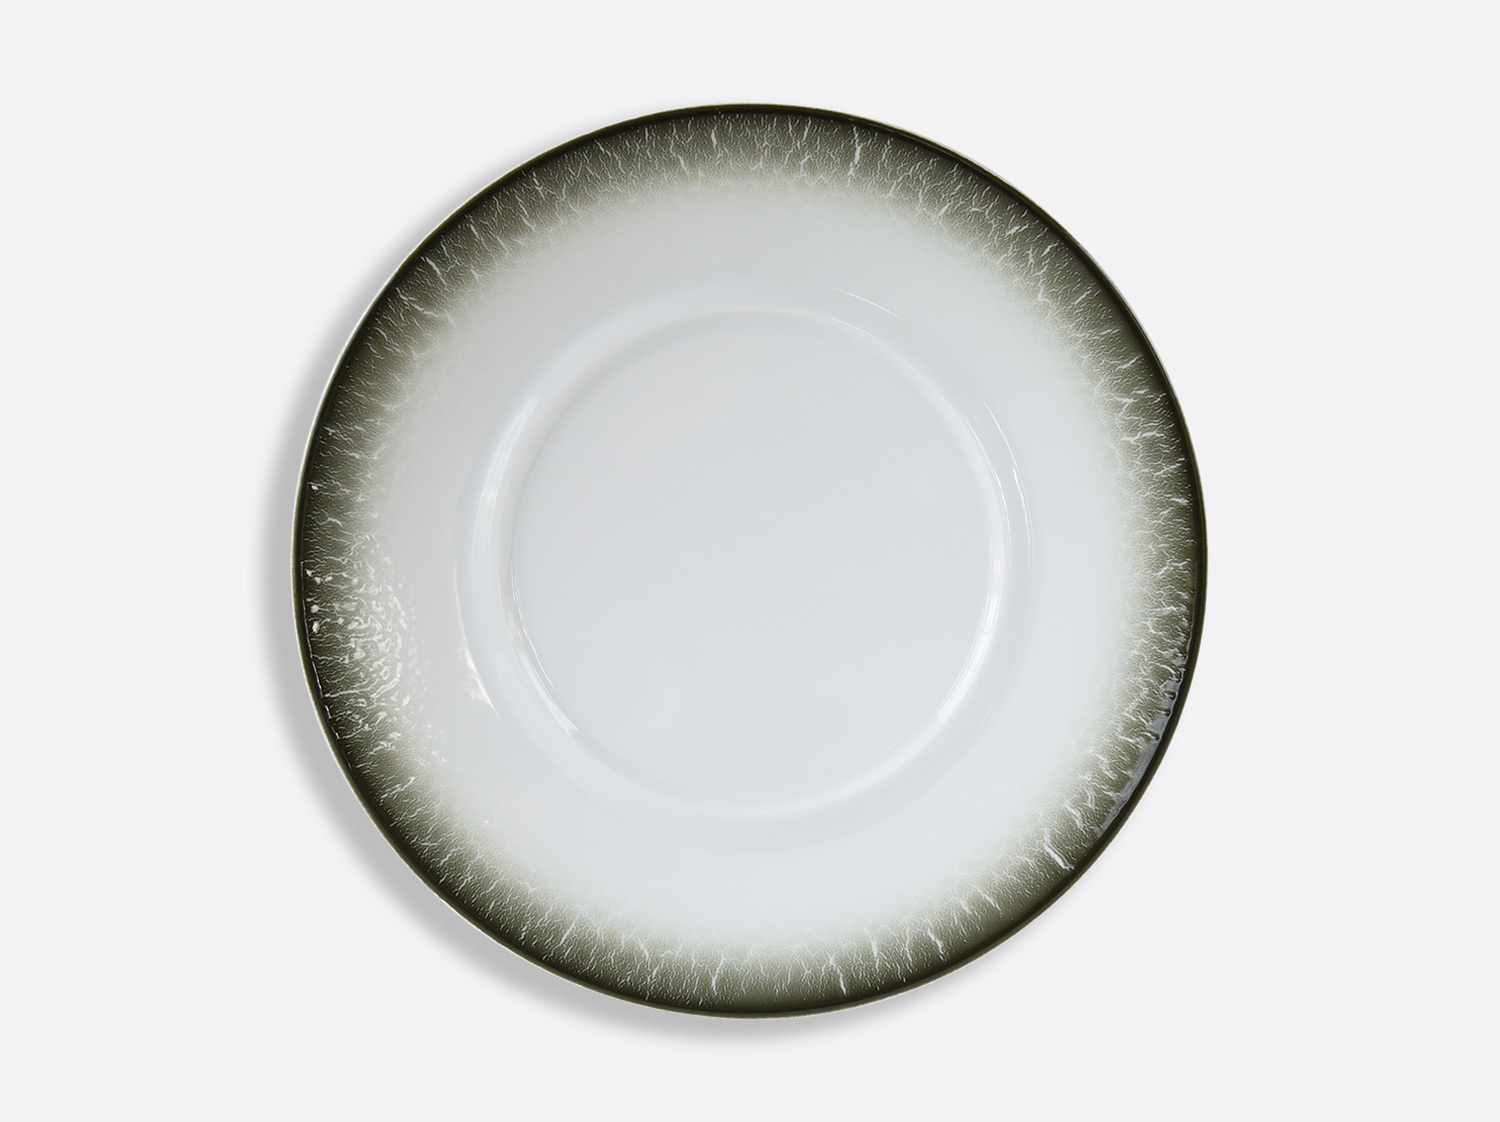 Assiette plate Shogun 29,5 cm en porcelaine de la collection TERRA LICHEN Bernardaud